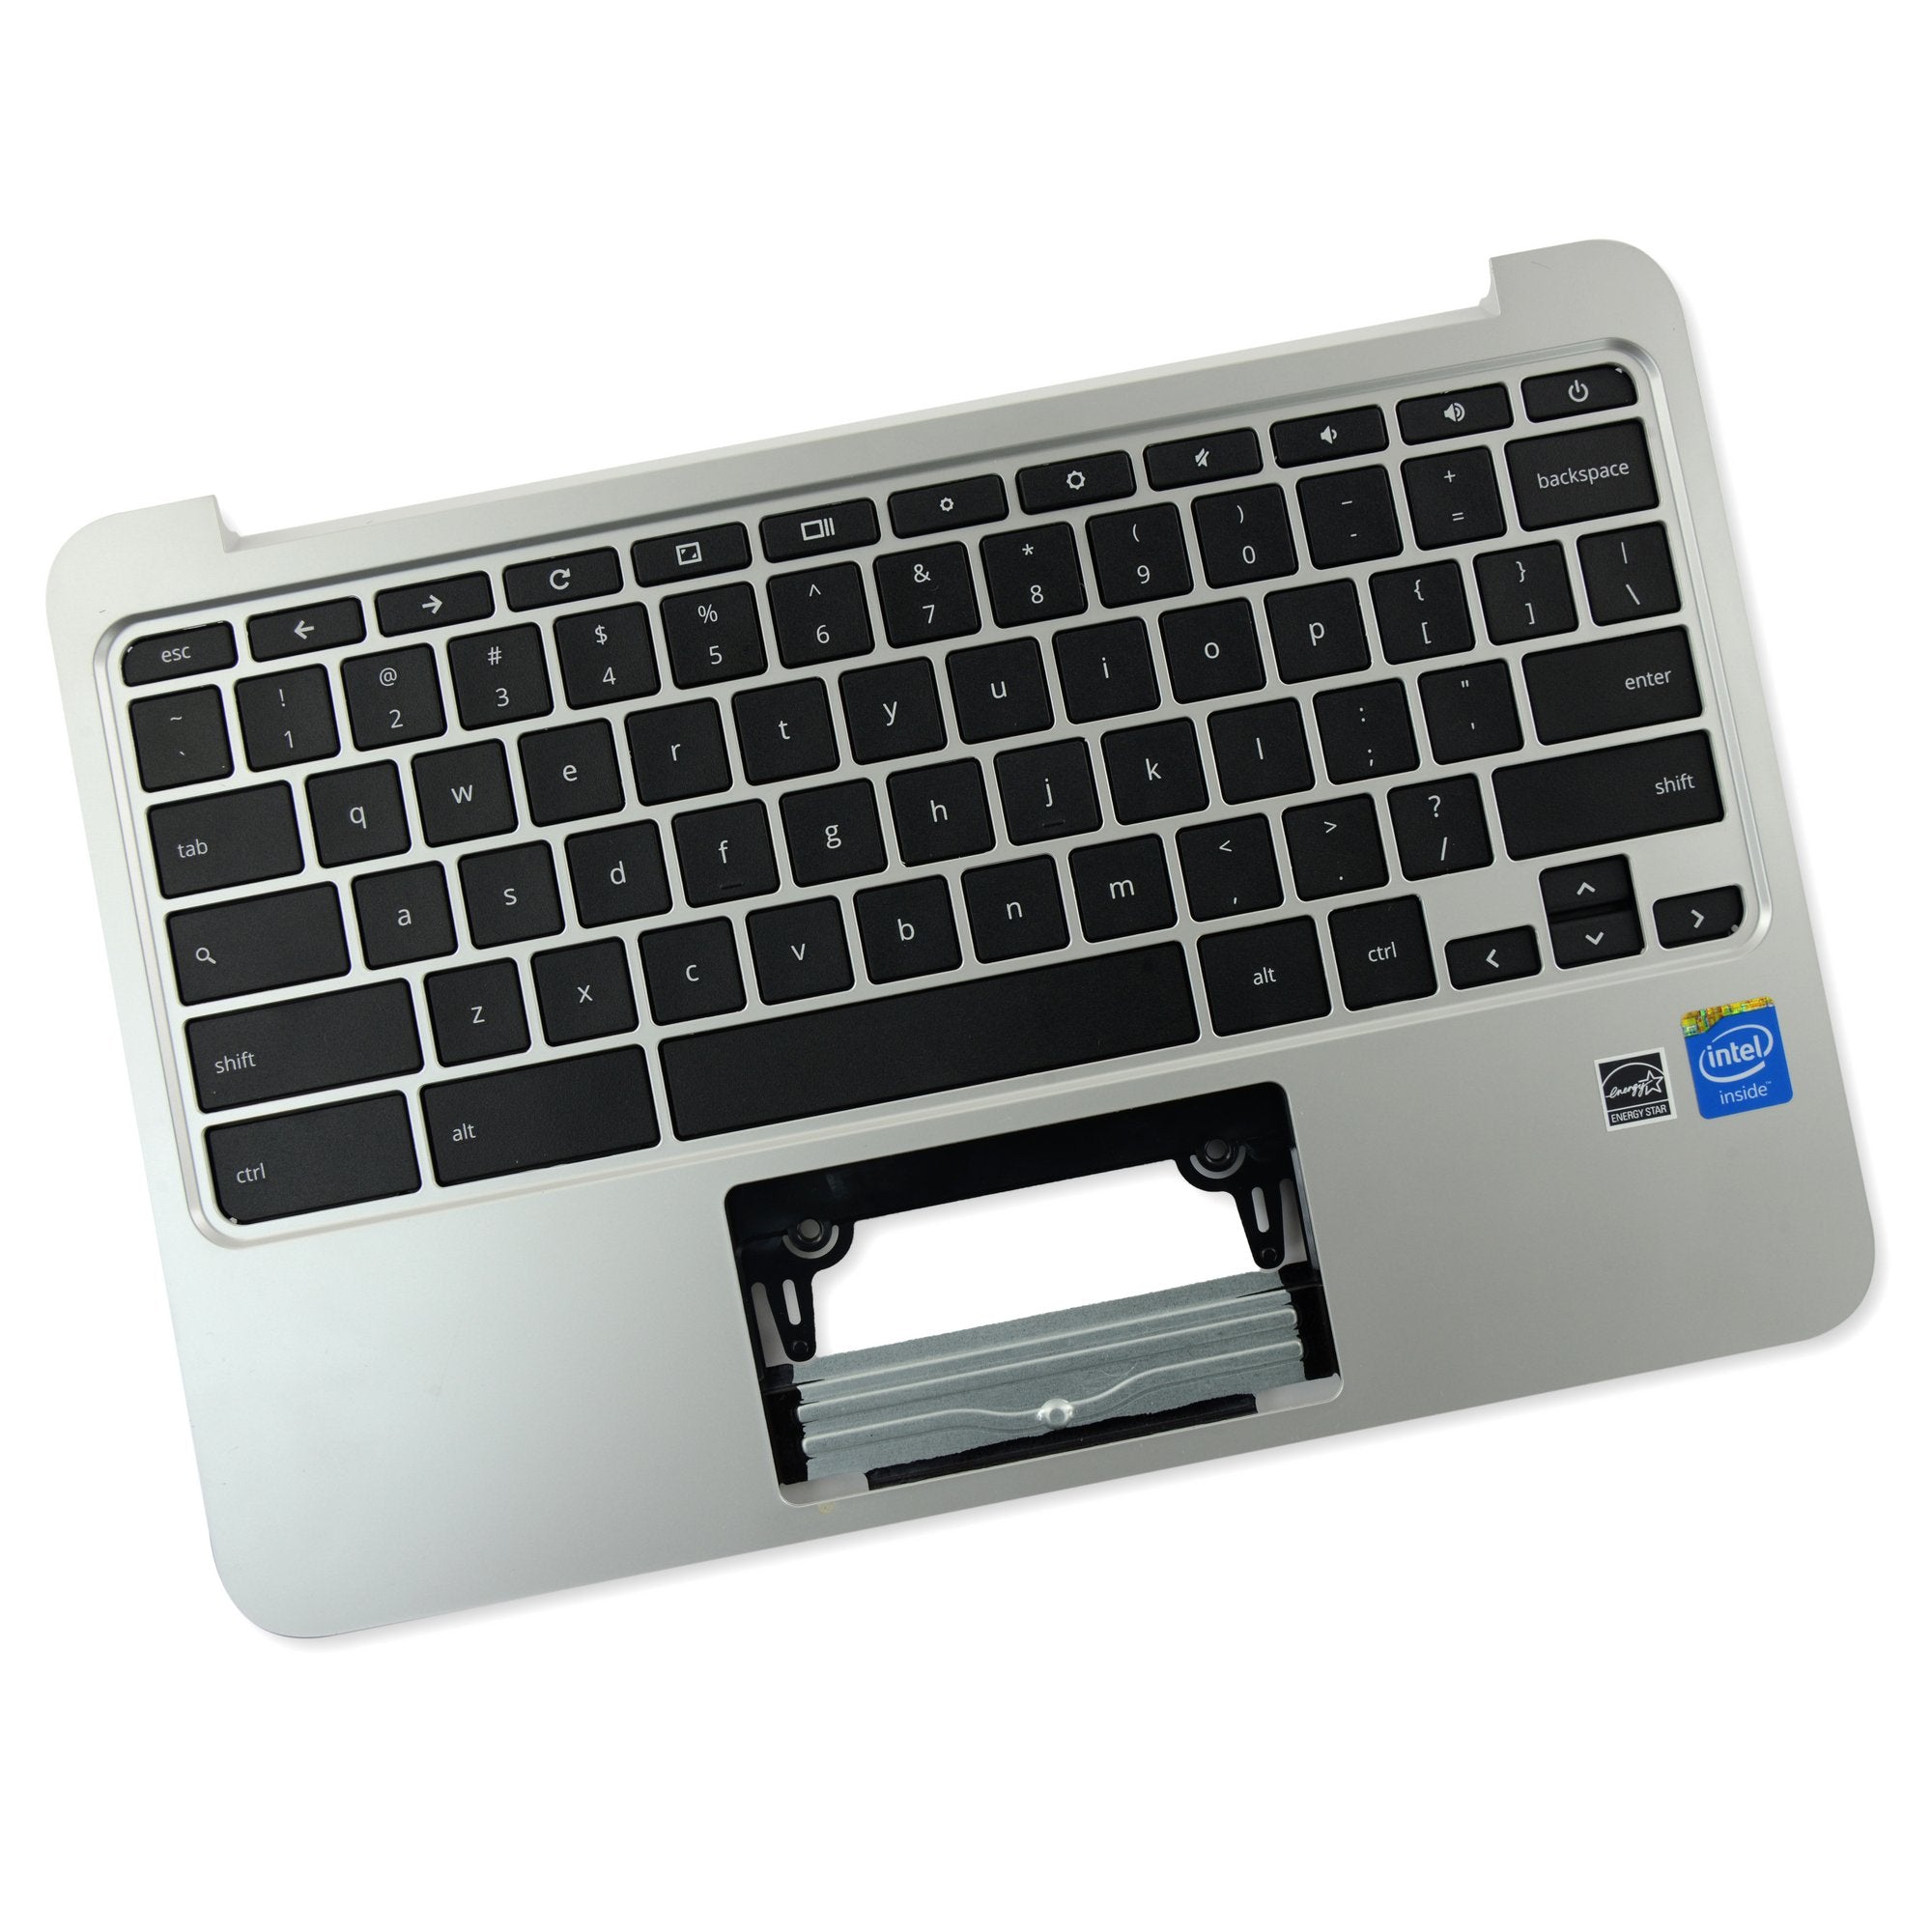 HP Chromebook 11 G3/G4 Palmrest Keyboard Assembly